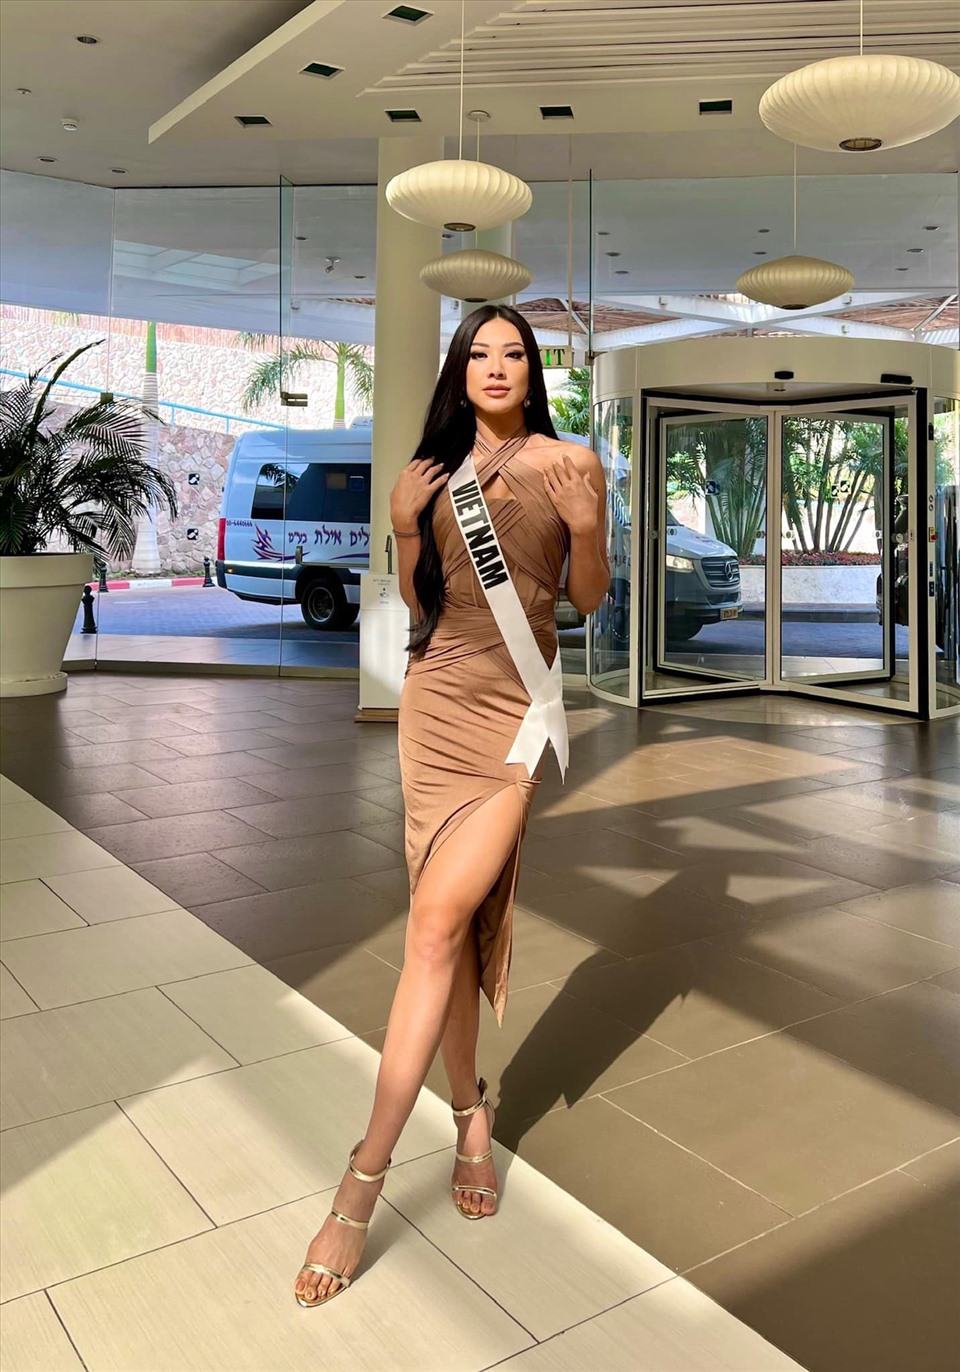 Ngày 8/12, đại diện Việt Nam đã bước vào buổi phỏng vấn kín - phần thi quan trọng của Miss Universe 2021. Cô lựa chọn một chiếc đầm màu be chất liệu mềm mại cũng sandal cao gót dây mảnh để ăn gian chiều cao. Mái tóc đen tuyền của Kim Duyên được thả xõa đầy tự nhiên.